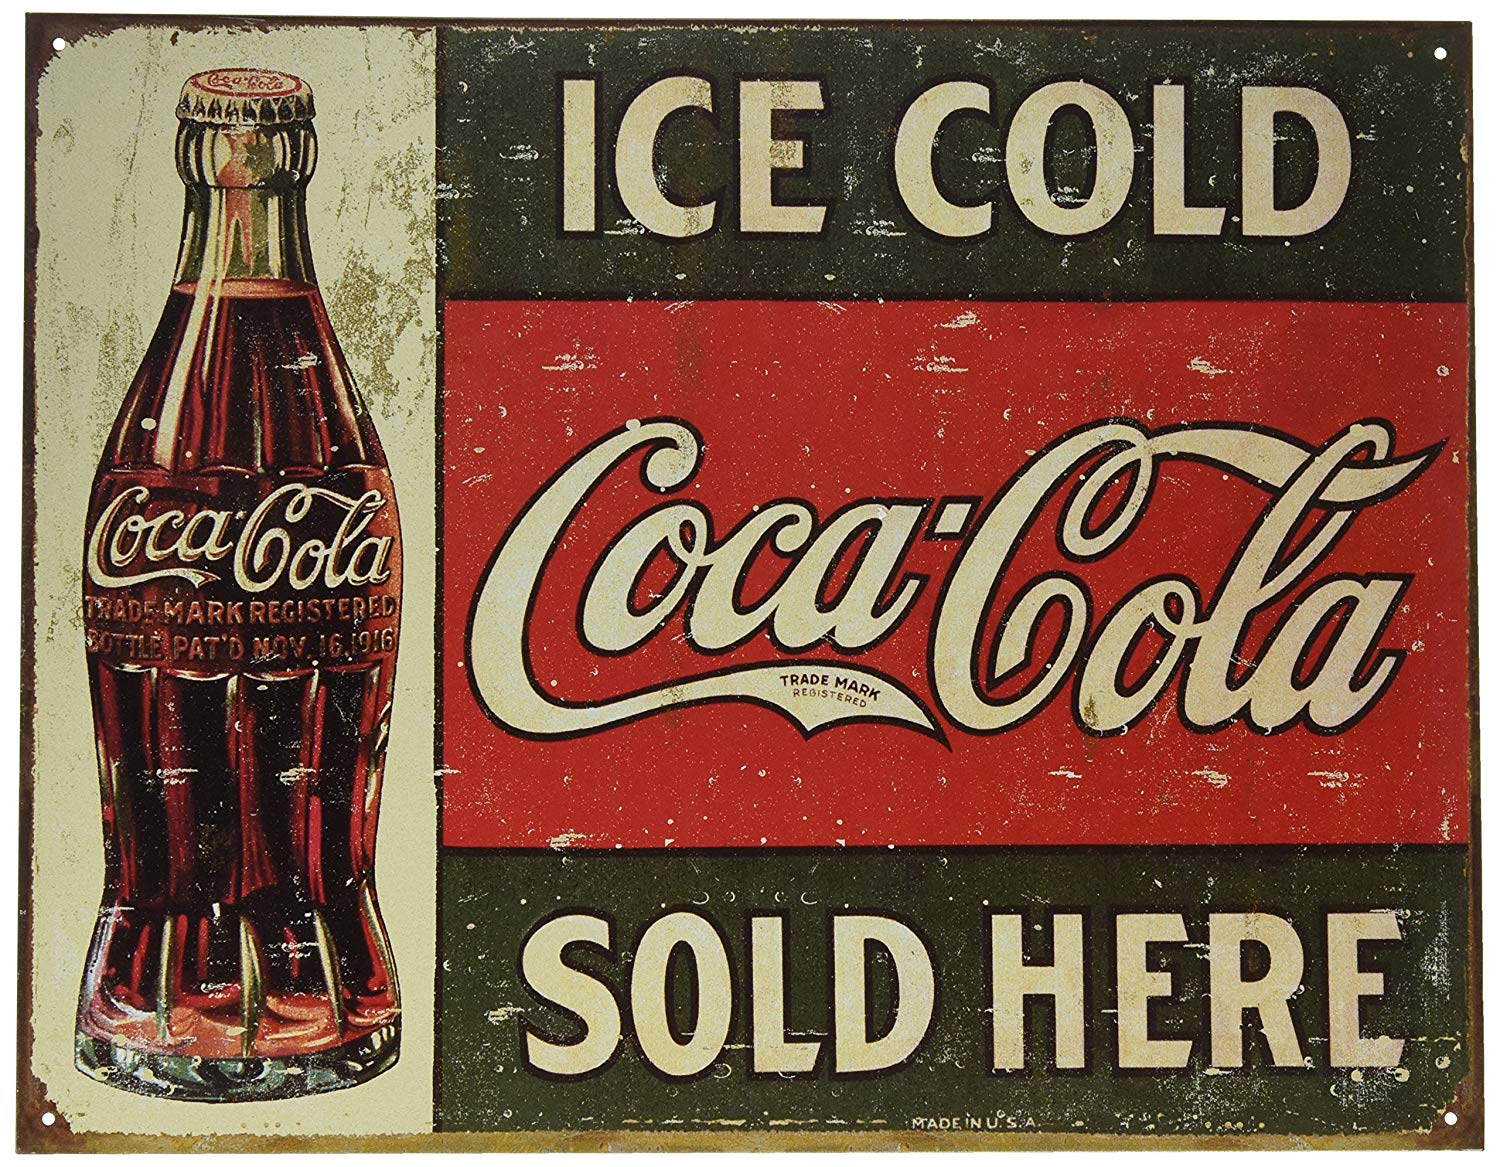 Desperate Enterprises Ice Cold Coca Cola Coke Sold Here